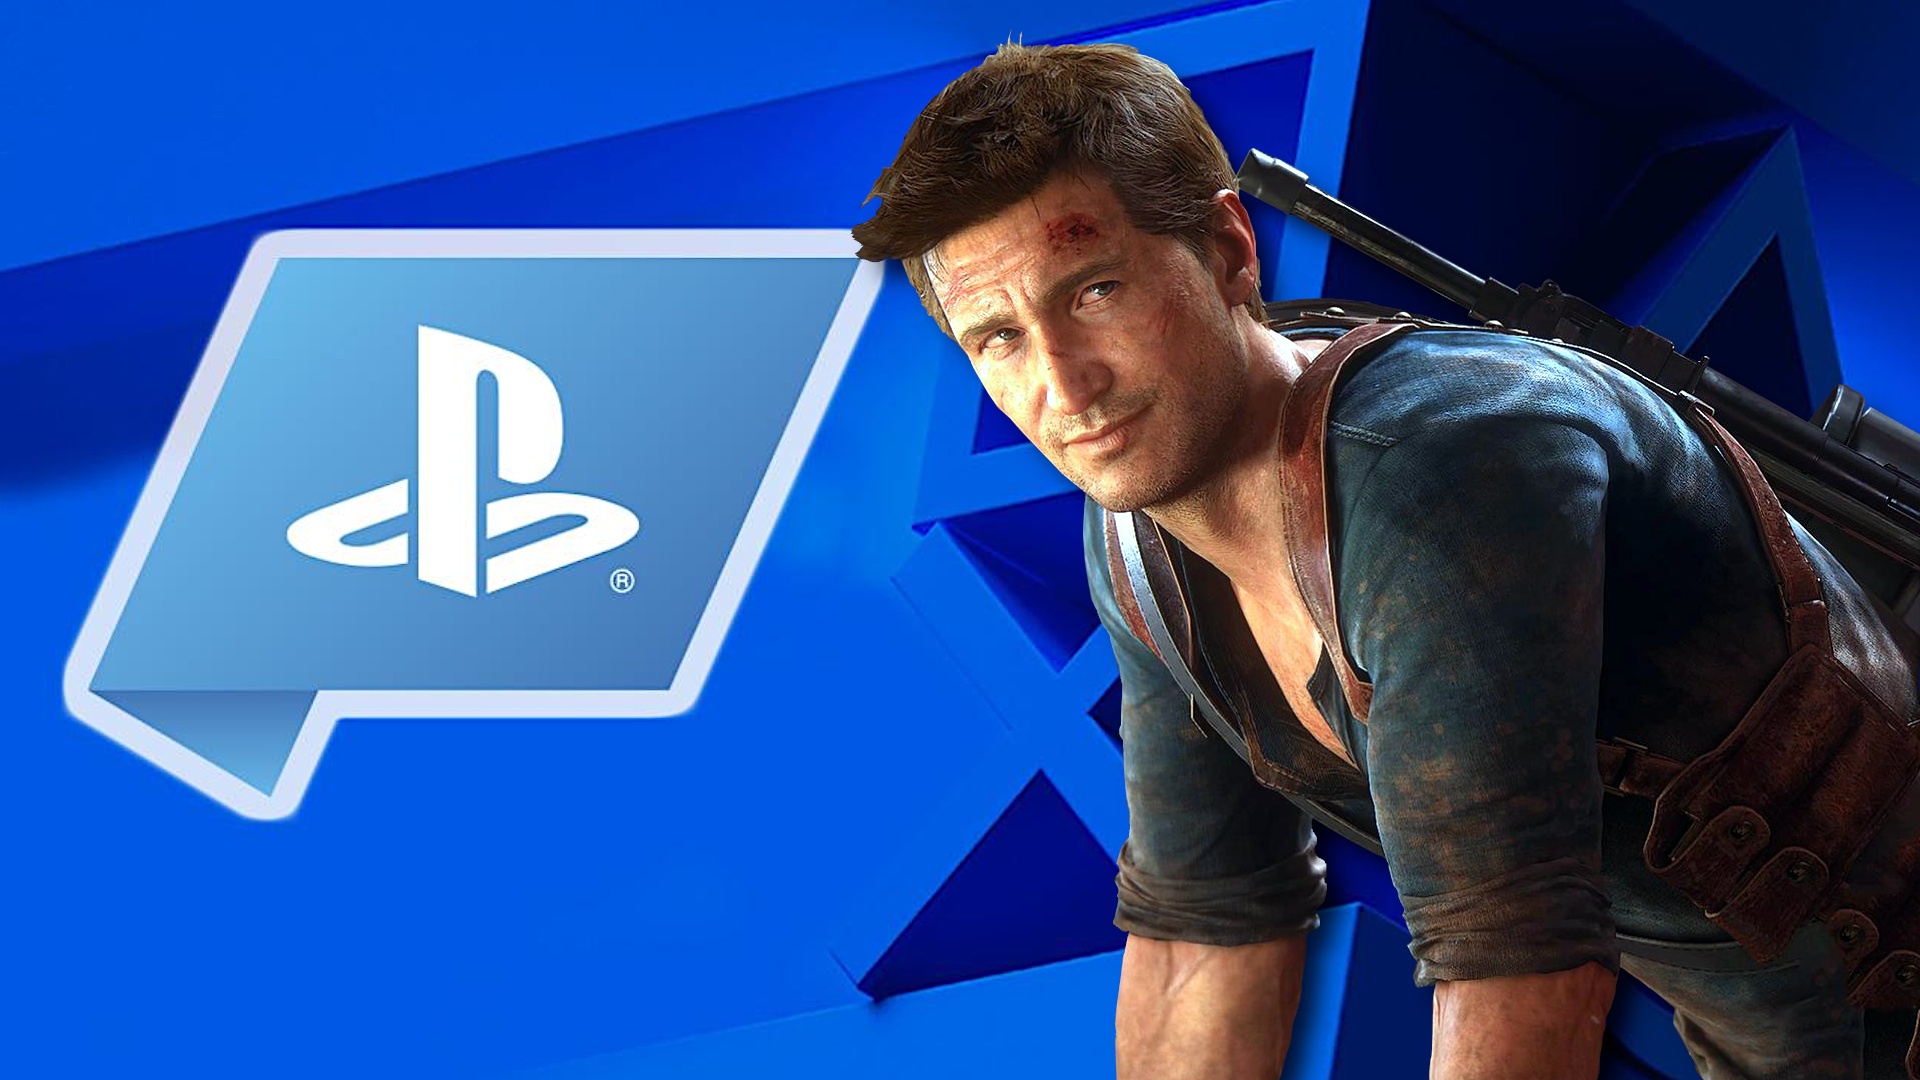 #»PlayStation Game Pass« – Soll schon in Kürze enthüllt werden, neue Infos zu Preisen und Angebot